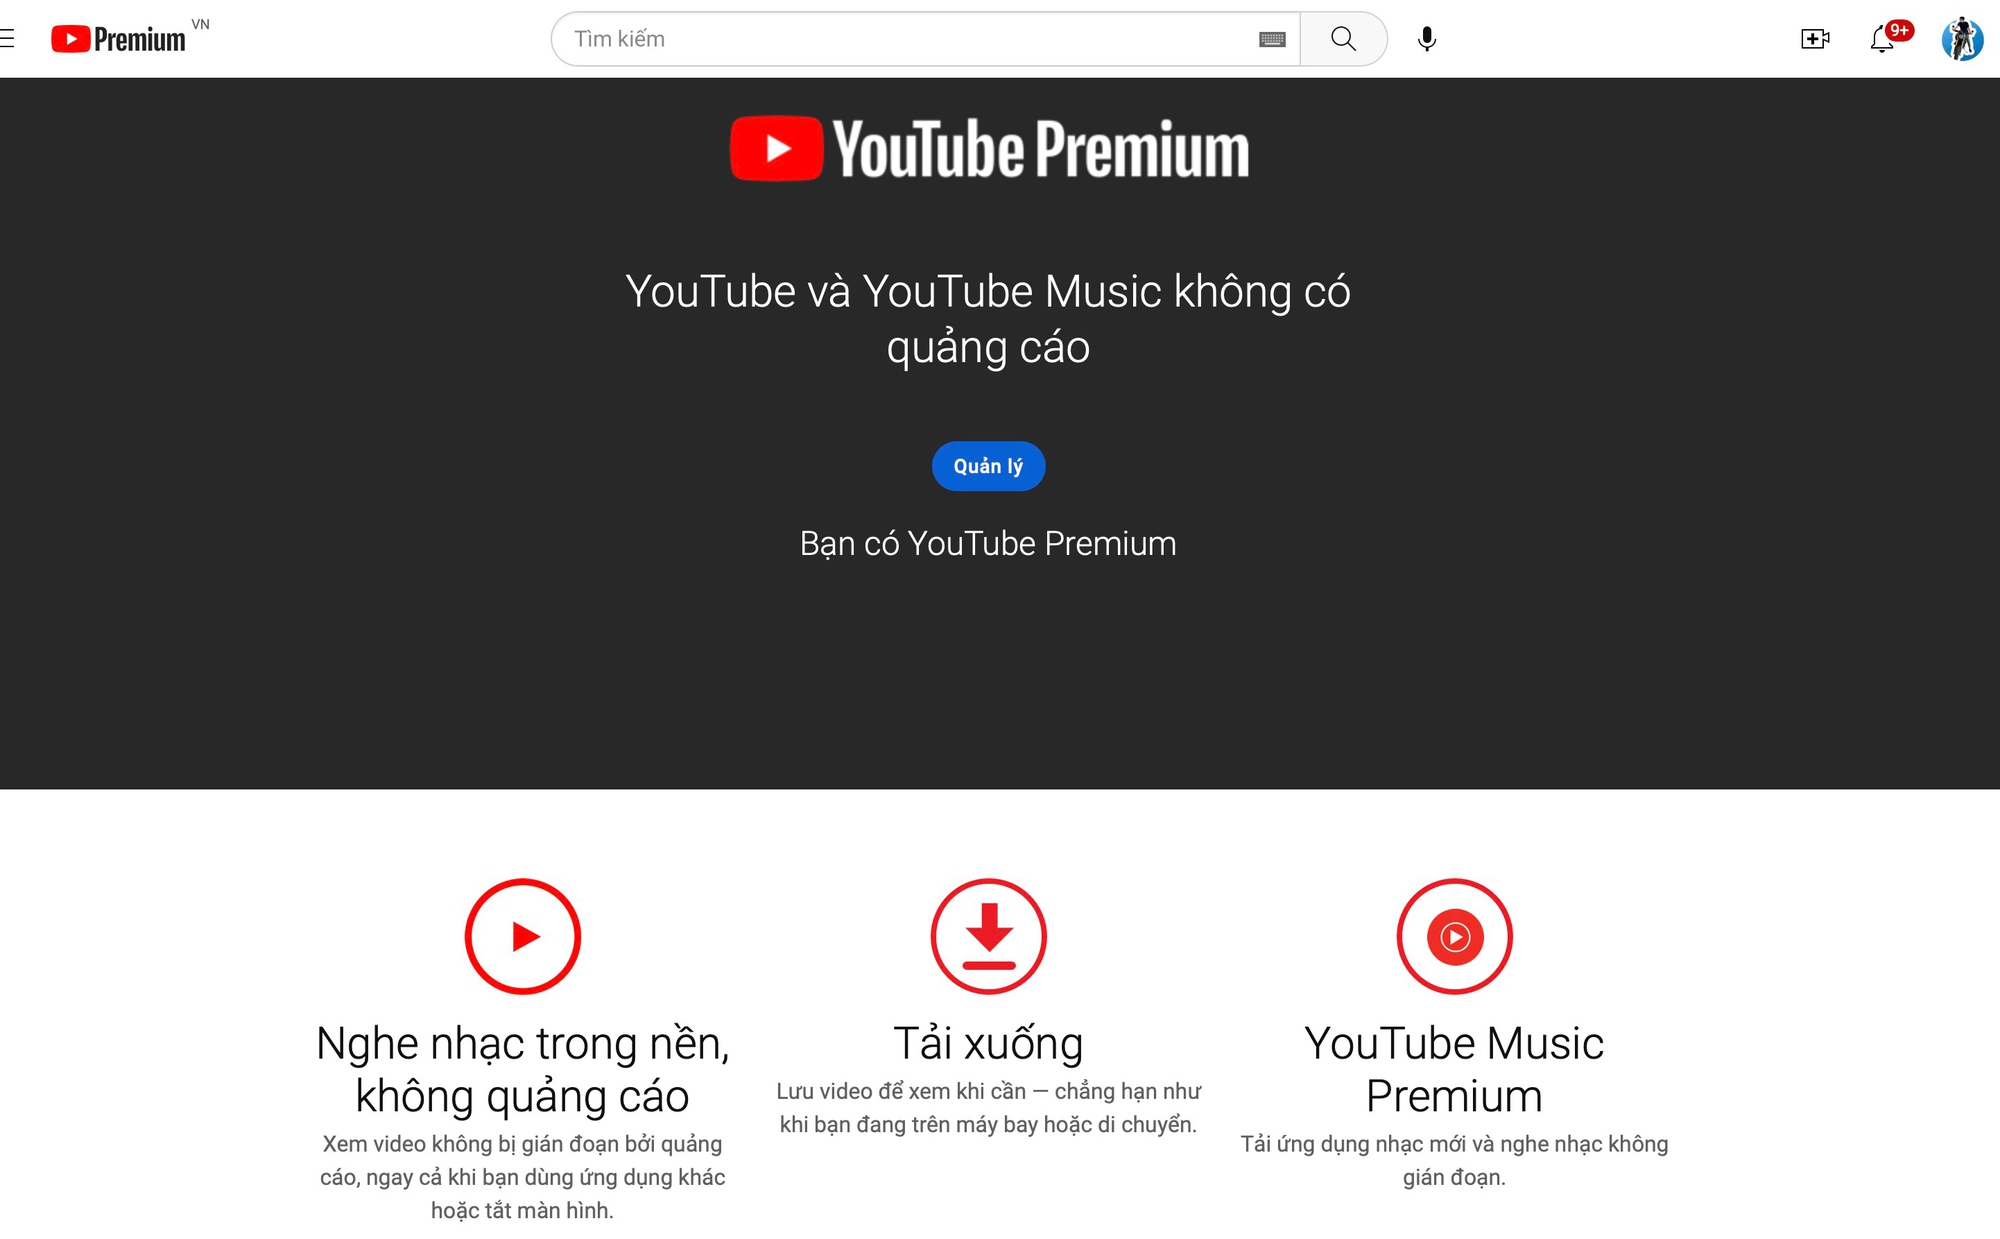 Cách đăng ký YouTube Premium tại Việt Nam để có giá hợp lý, được miễn phí dùng thử